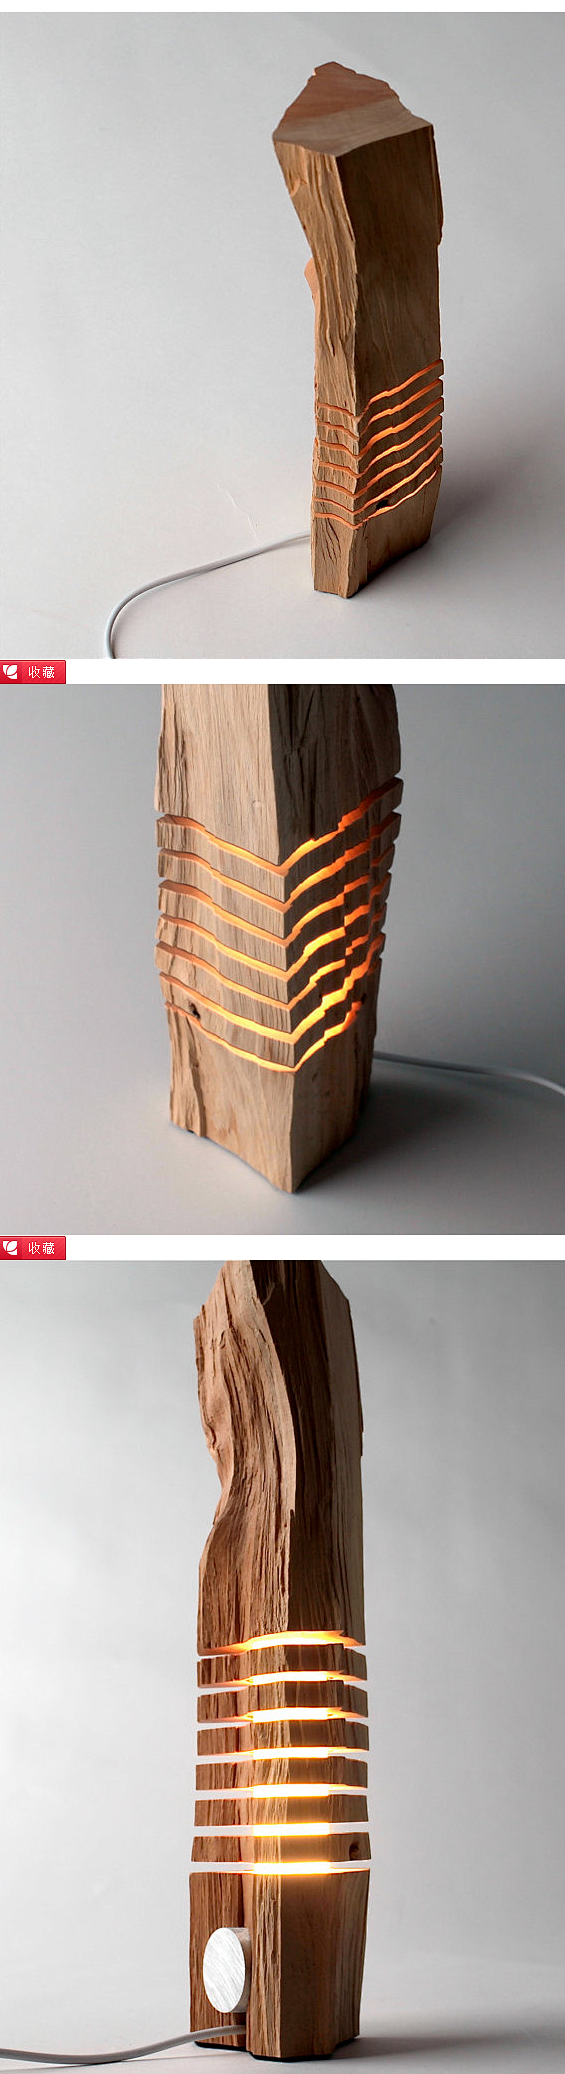 简约的木质雕塑艺术_产品设计_LIFE³...